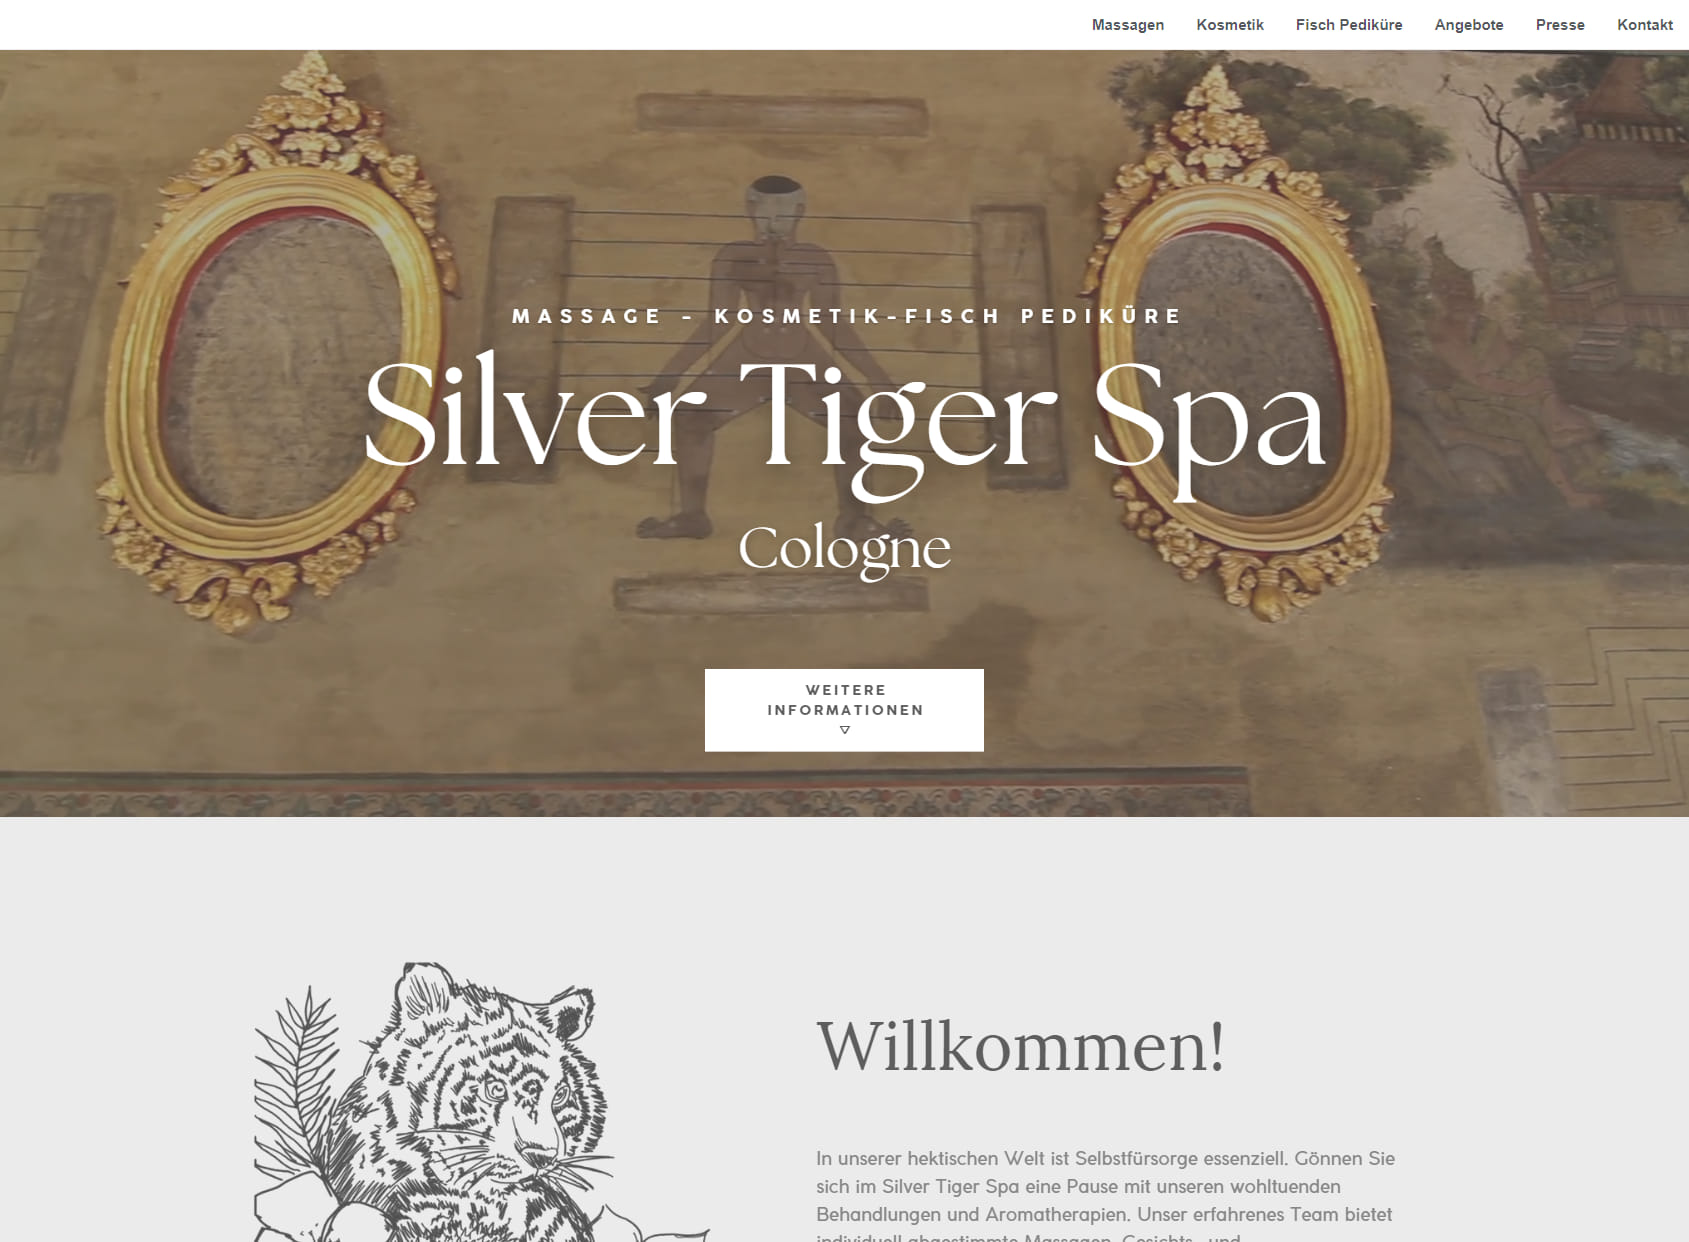 Silver Tiger Spa Cologne